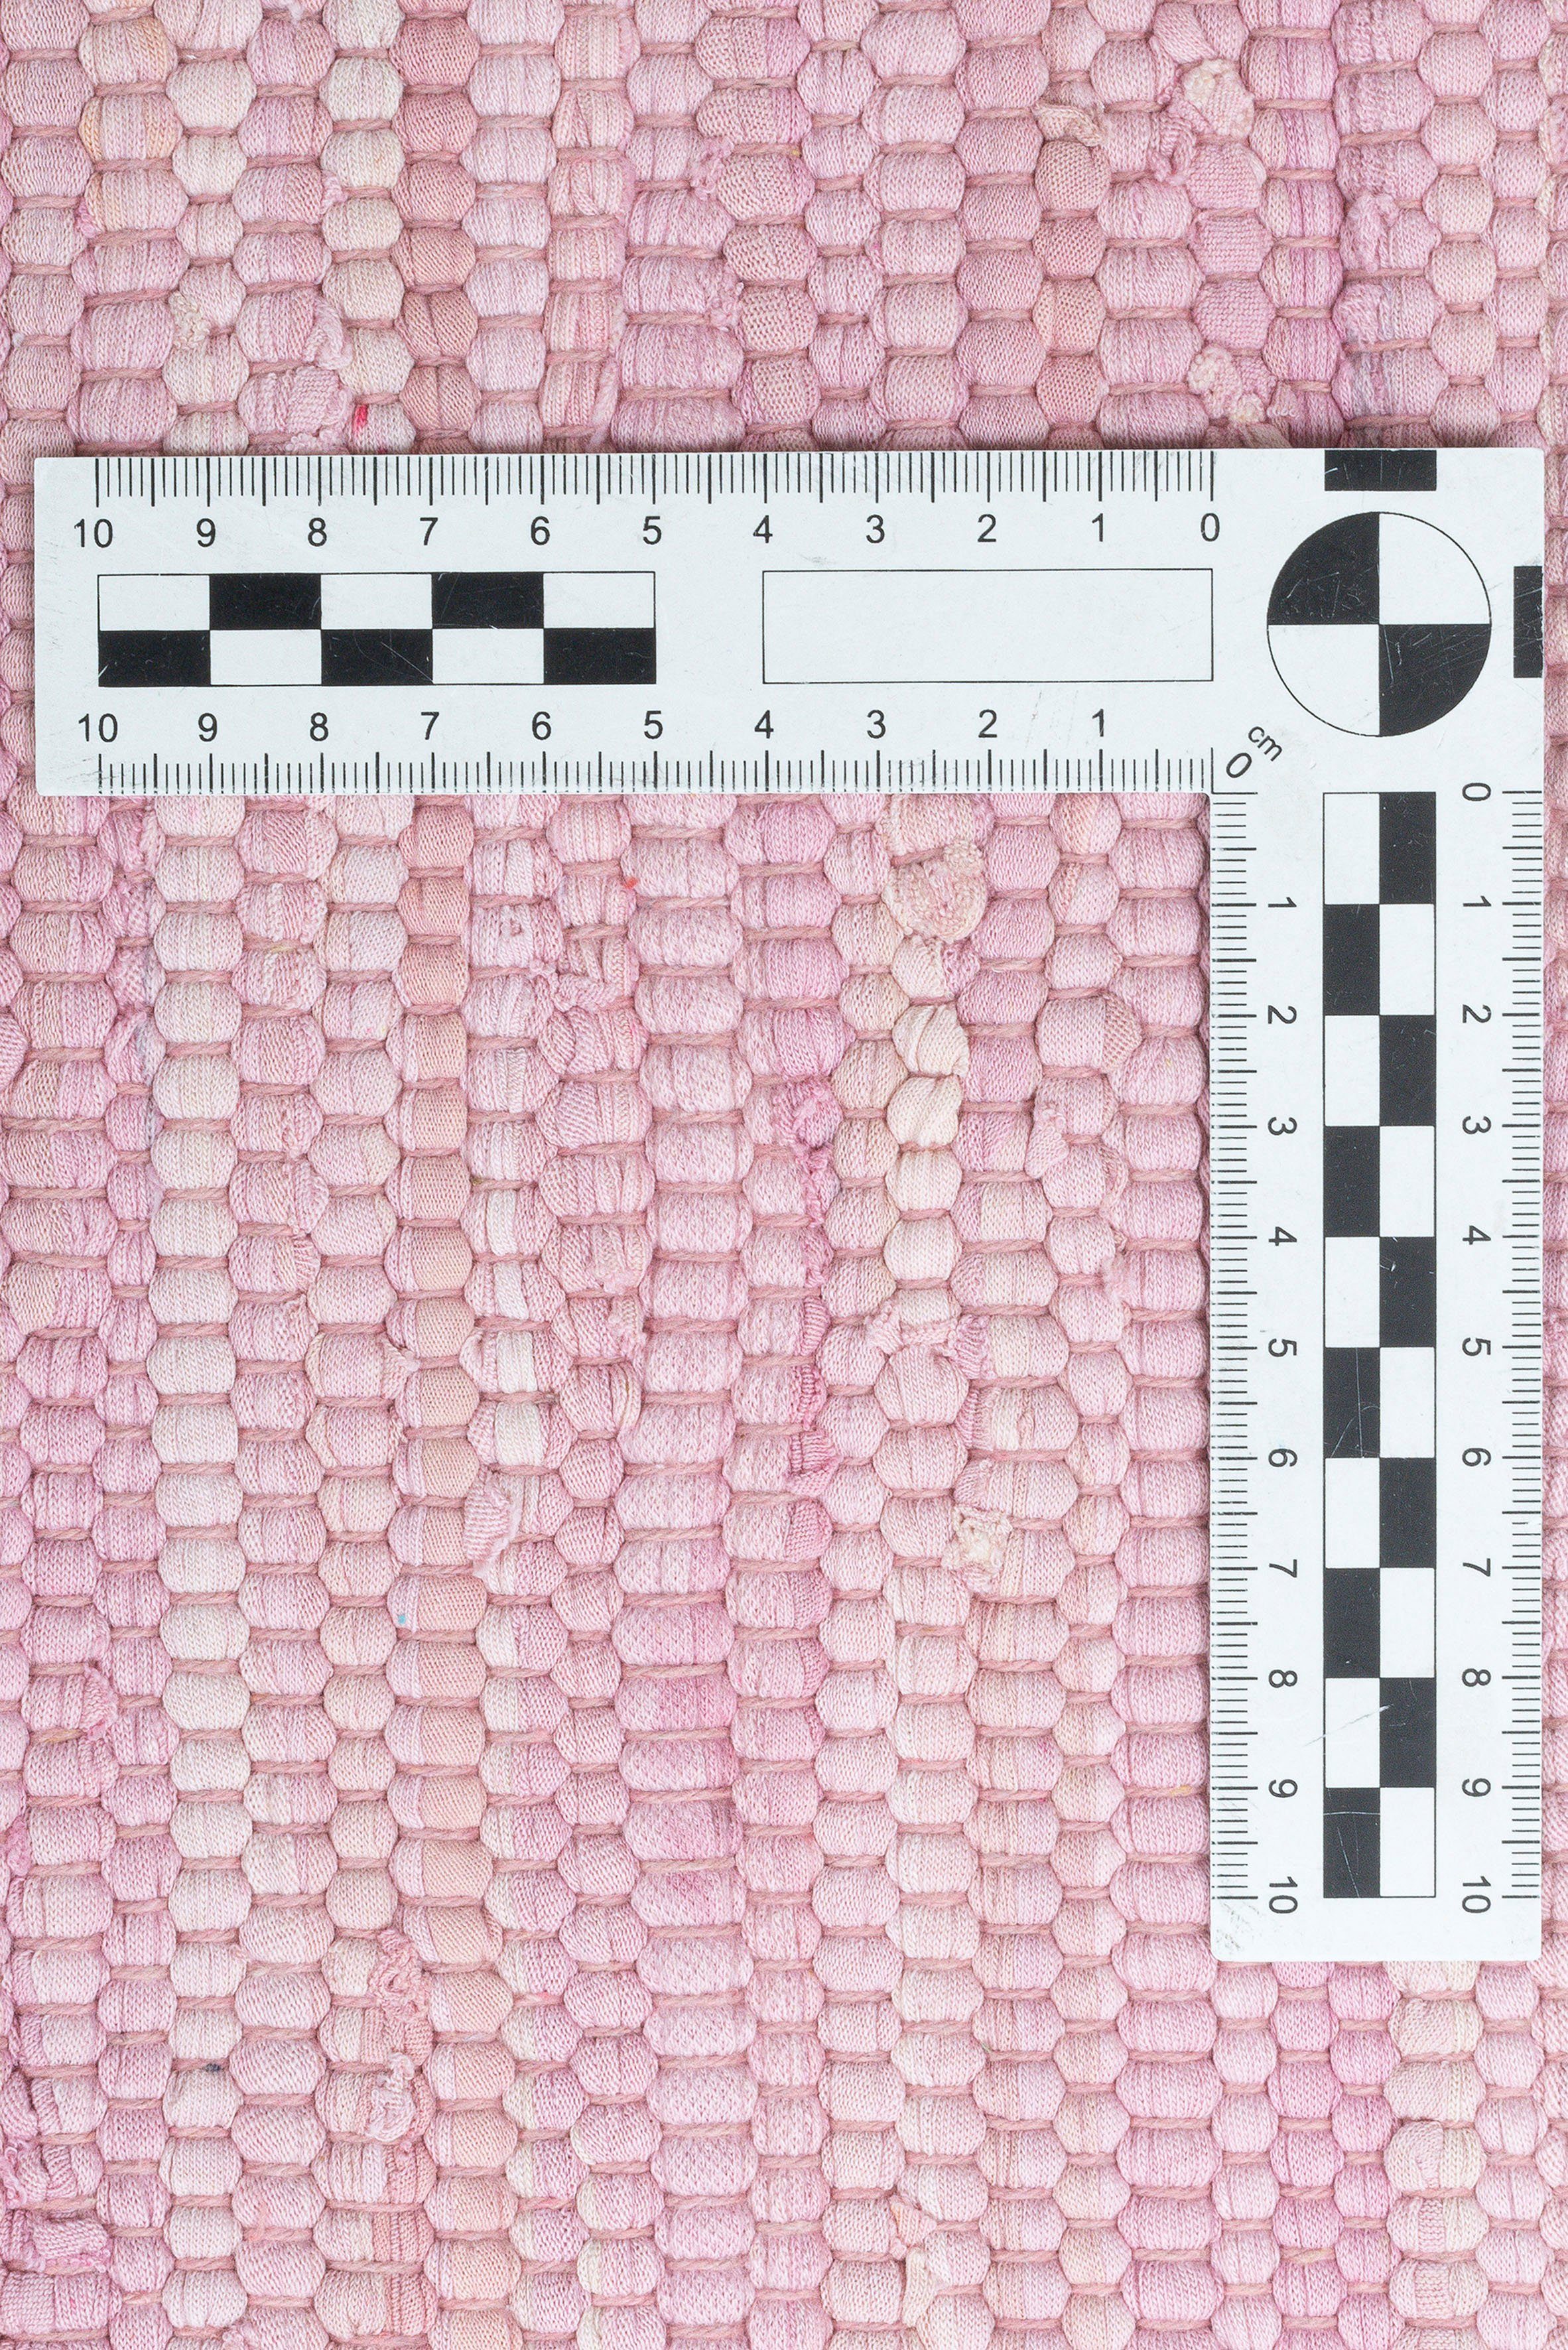 Fransen THEKO, rosé Cotton, reine Höhe: 5 mit Handweb rechteckig, handgewebt, mm, Happy Flachgewebe, Baumwolle, Teppich, Teppich